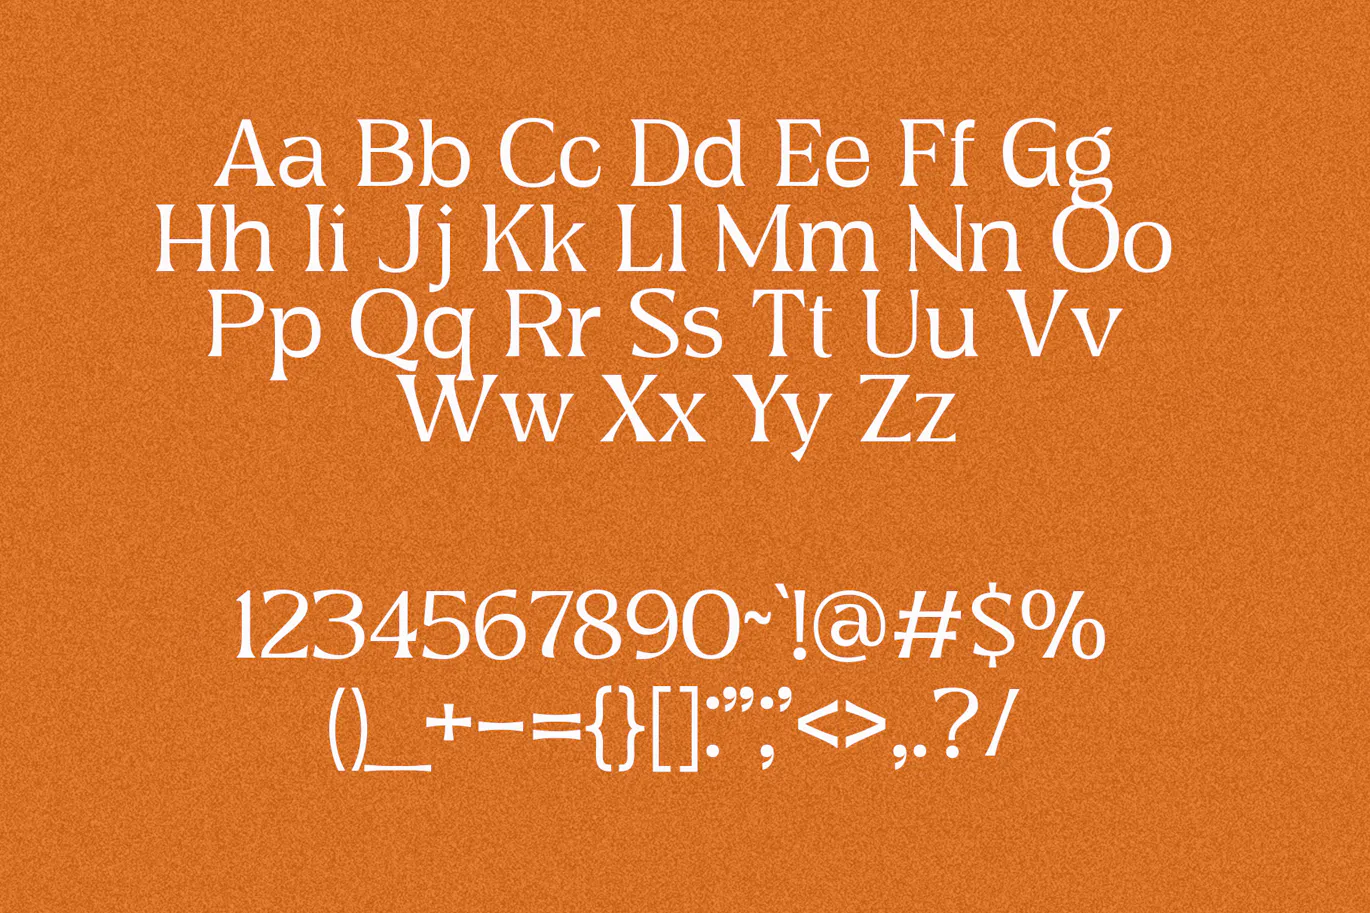 非常的精致优美可用于贺卡设计的英文字体 Ghiena - Display Serif Typeface 设计字体 第7张